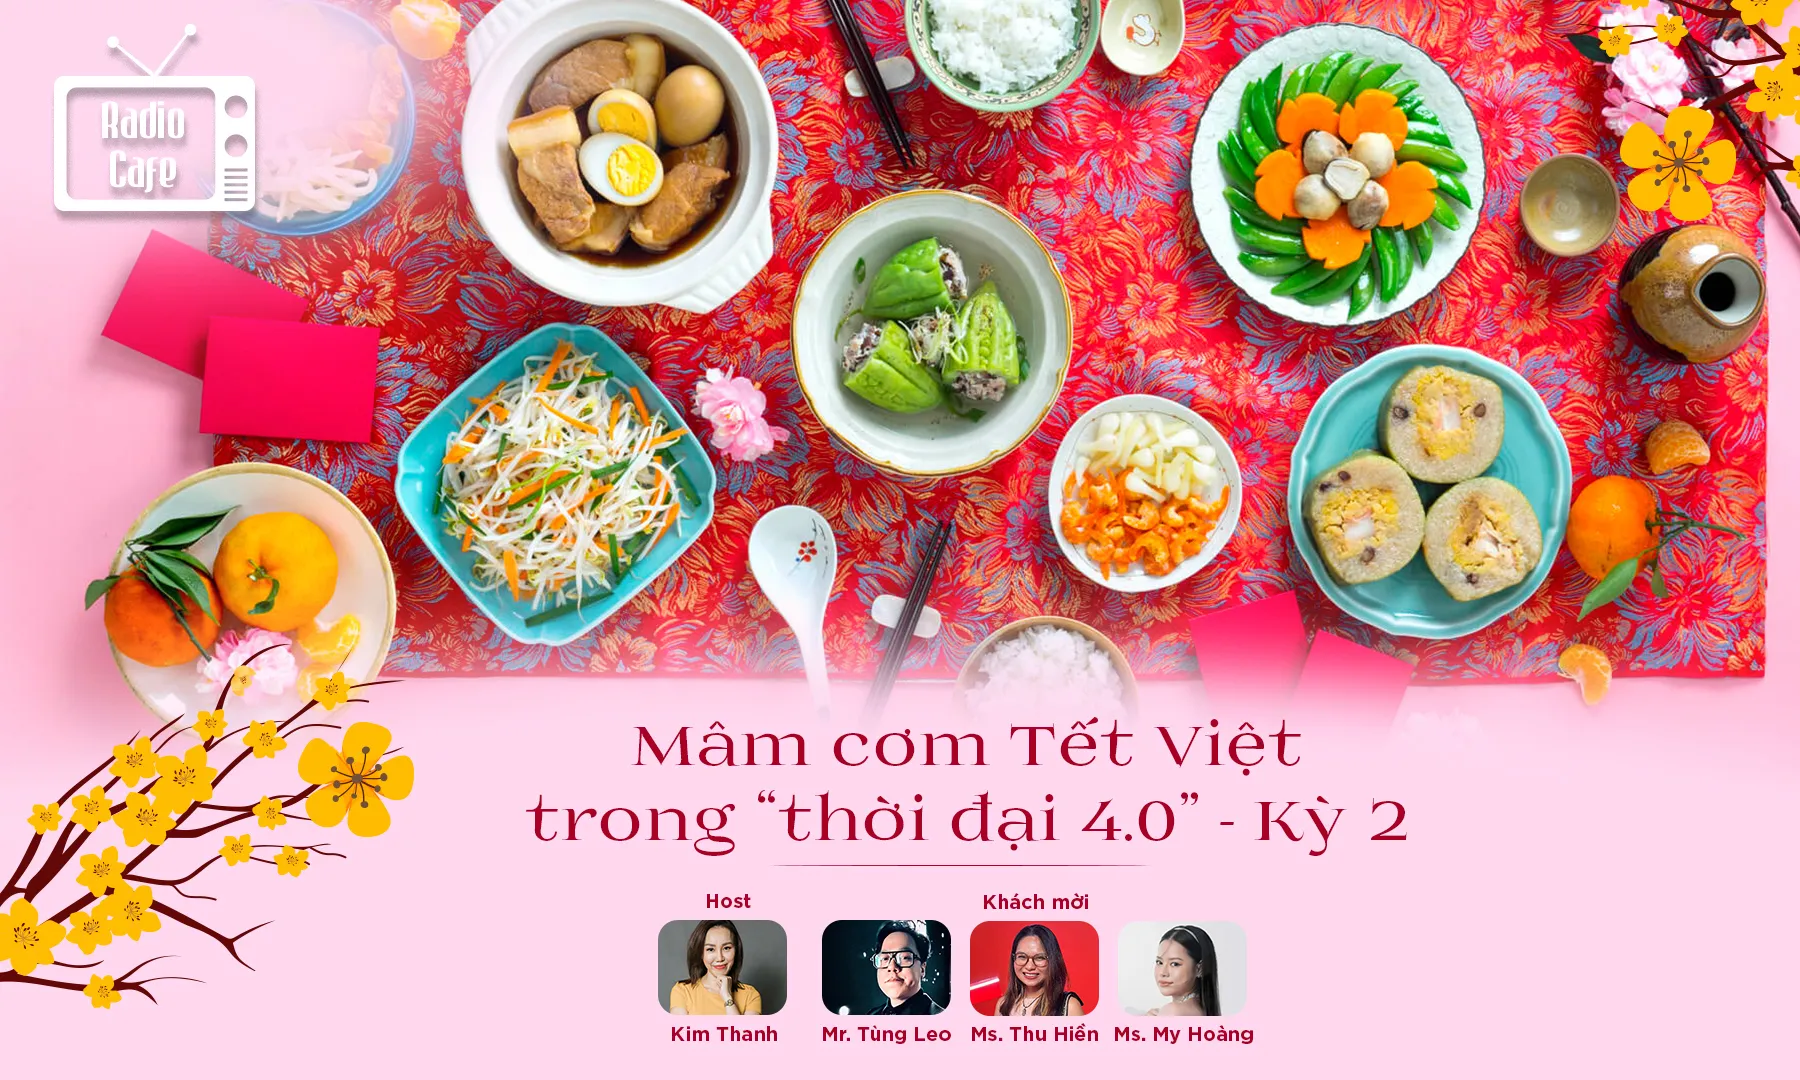 Mâm cơm Tết Việt thời 4.0 - Ở đâu có gia đình là ở đó có Tết